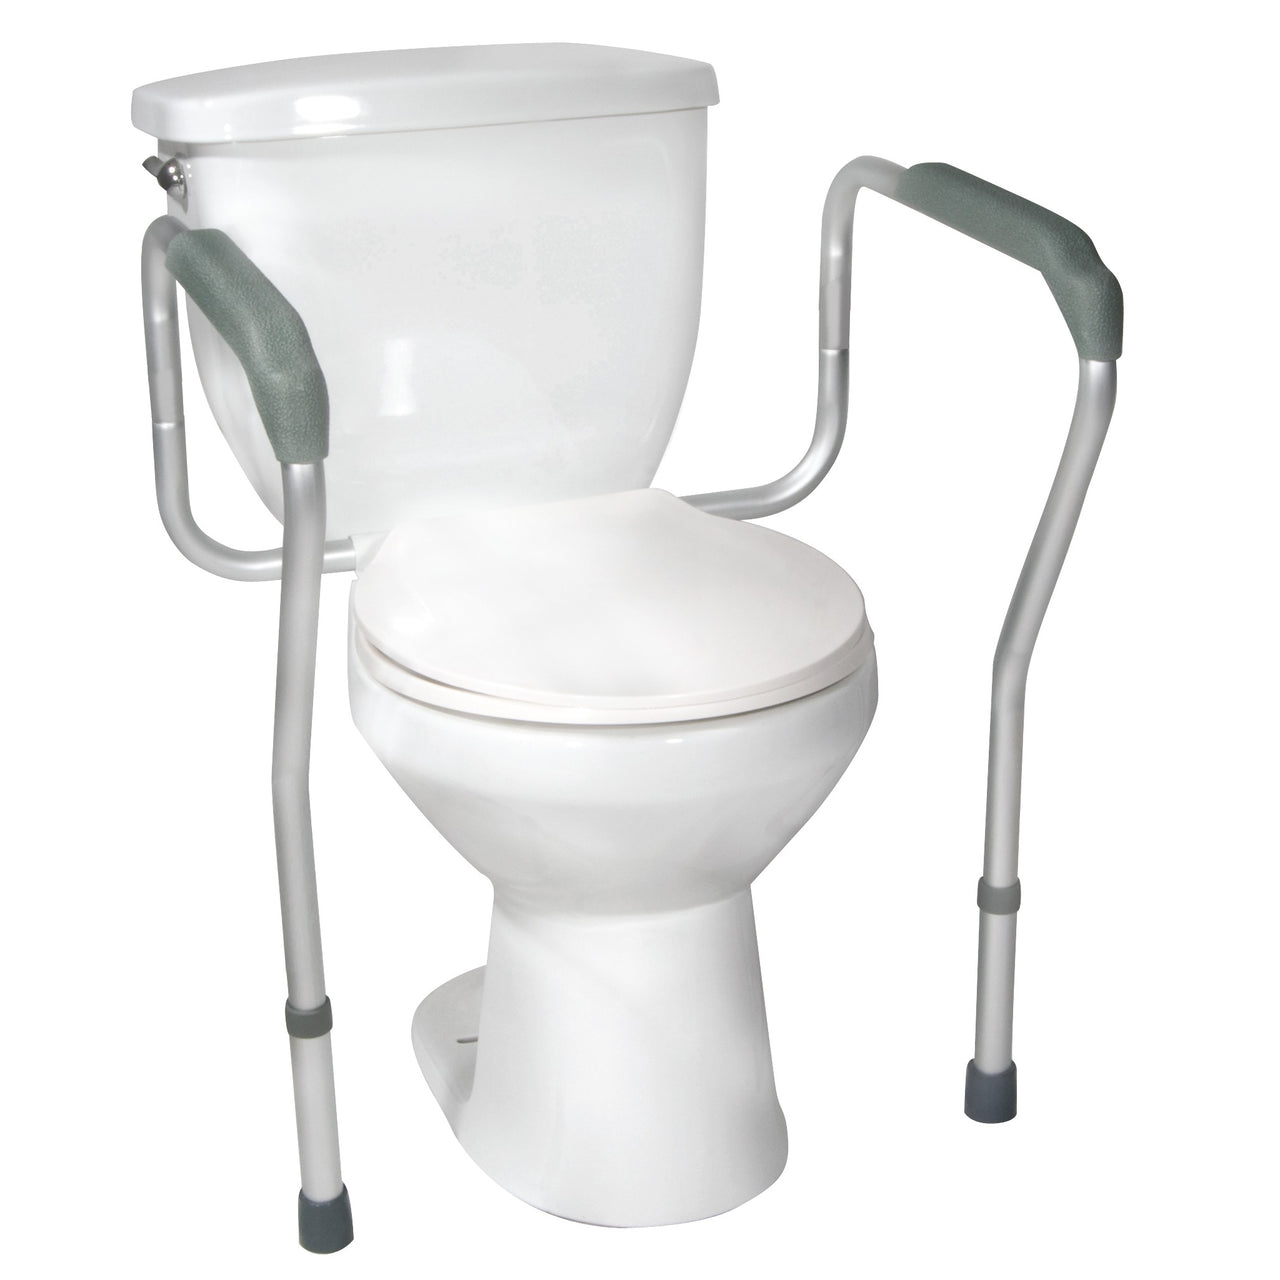 Toilettes portables  Aides WC : CareServe